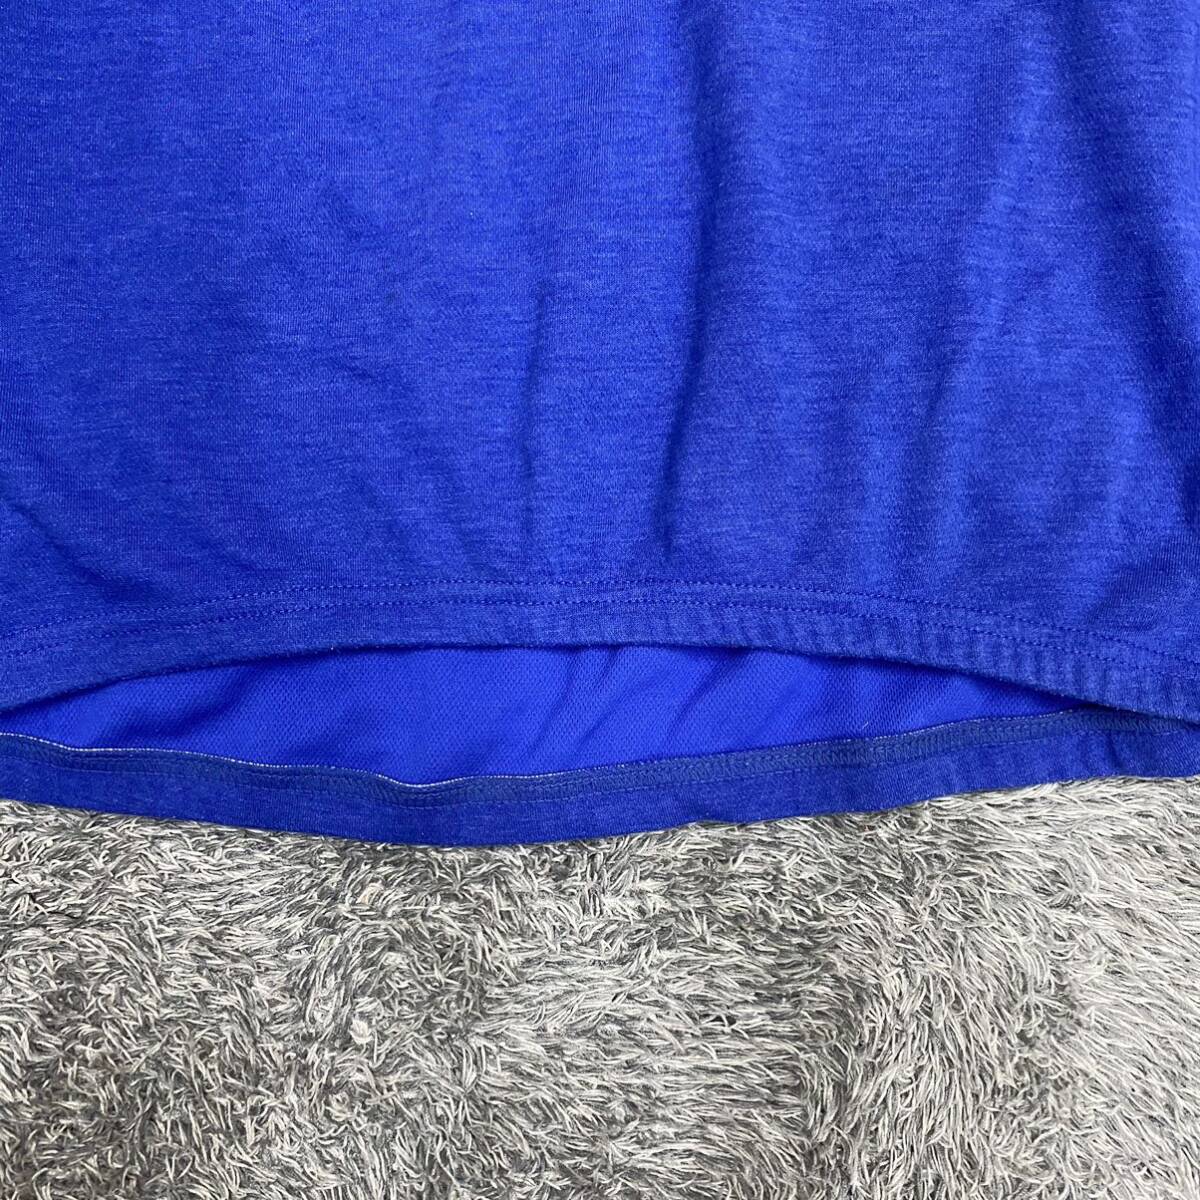 NIKE ACG ナイキエーシージー Tシャツ 半袖カットソー ハーフジップ サイズM ブルー 青 メンズ トップス 最落なし （O18）の画像4